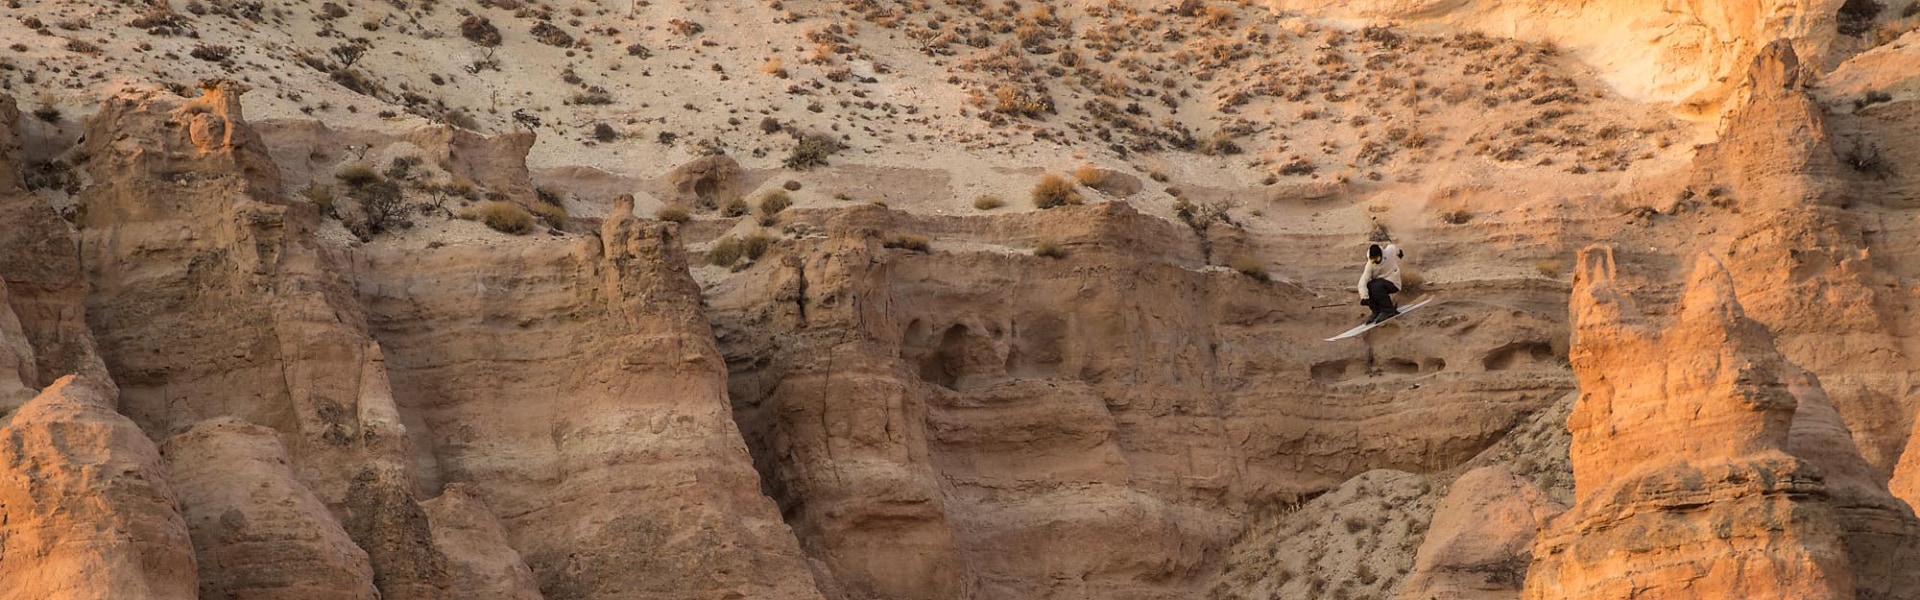 Smučar v puščavi med skokom